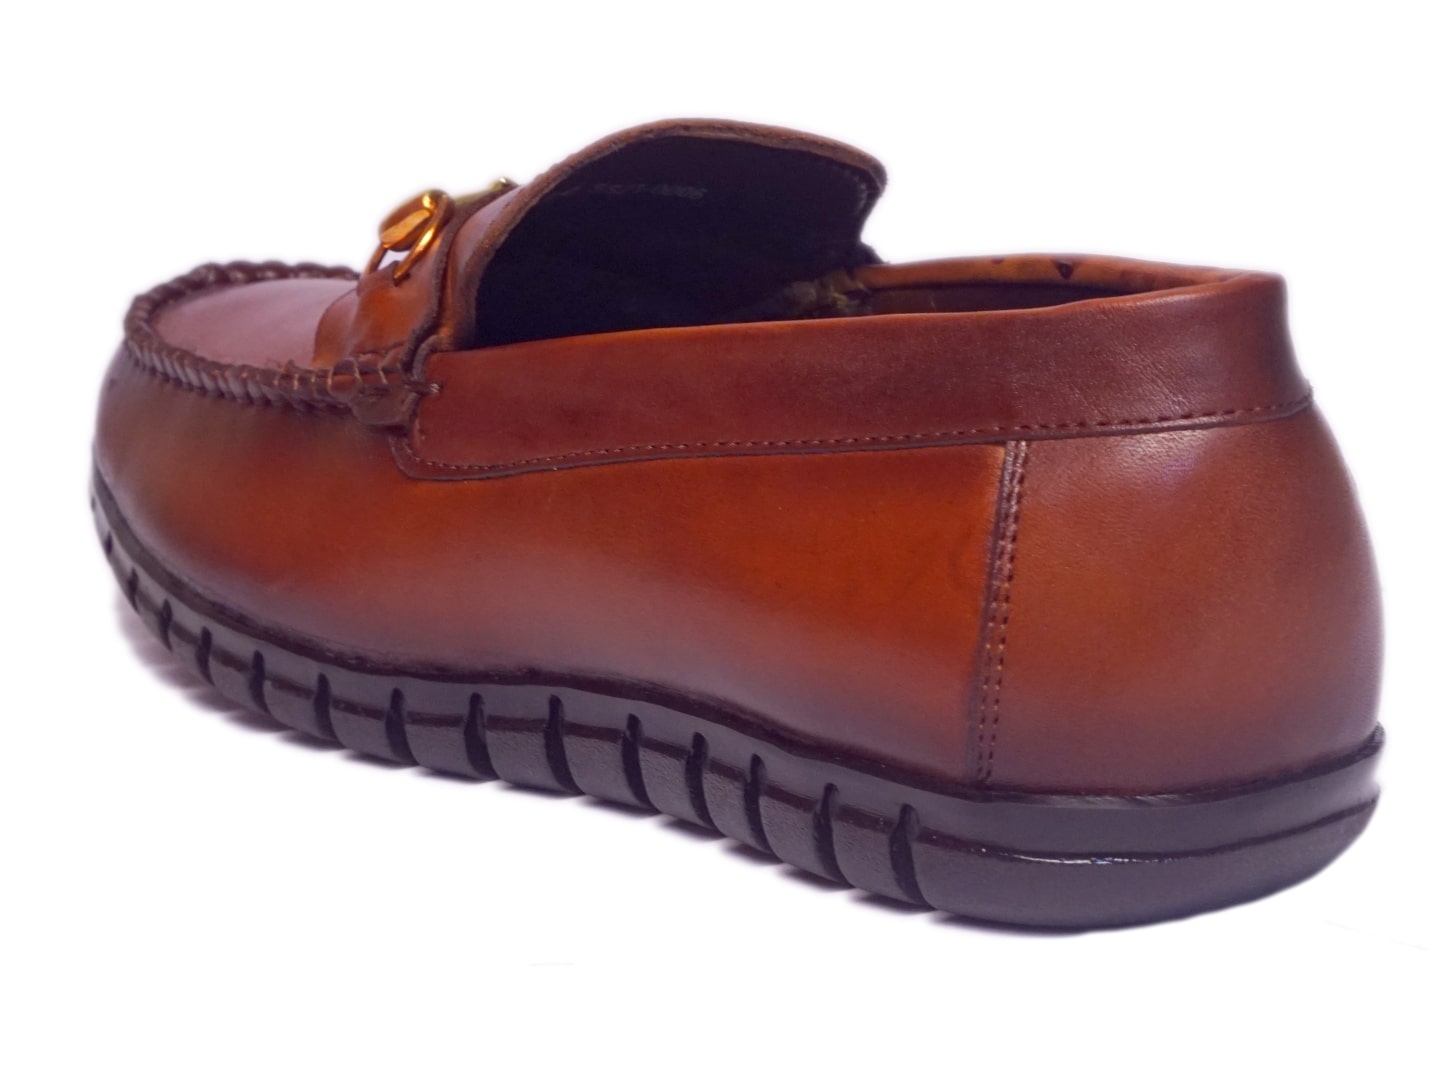 Men Footwear, Tan Loafers